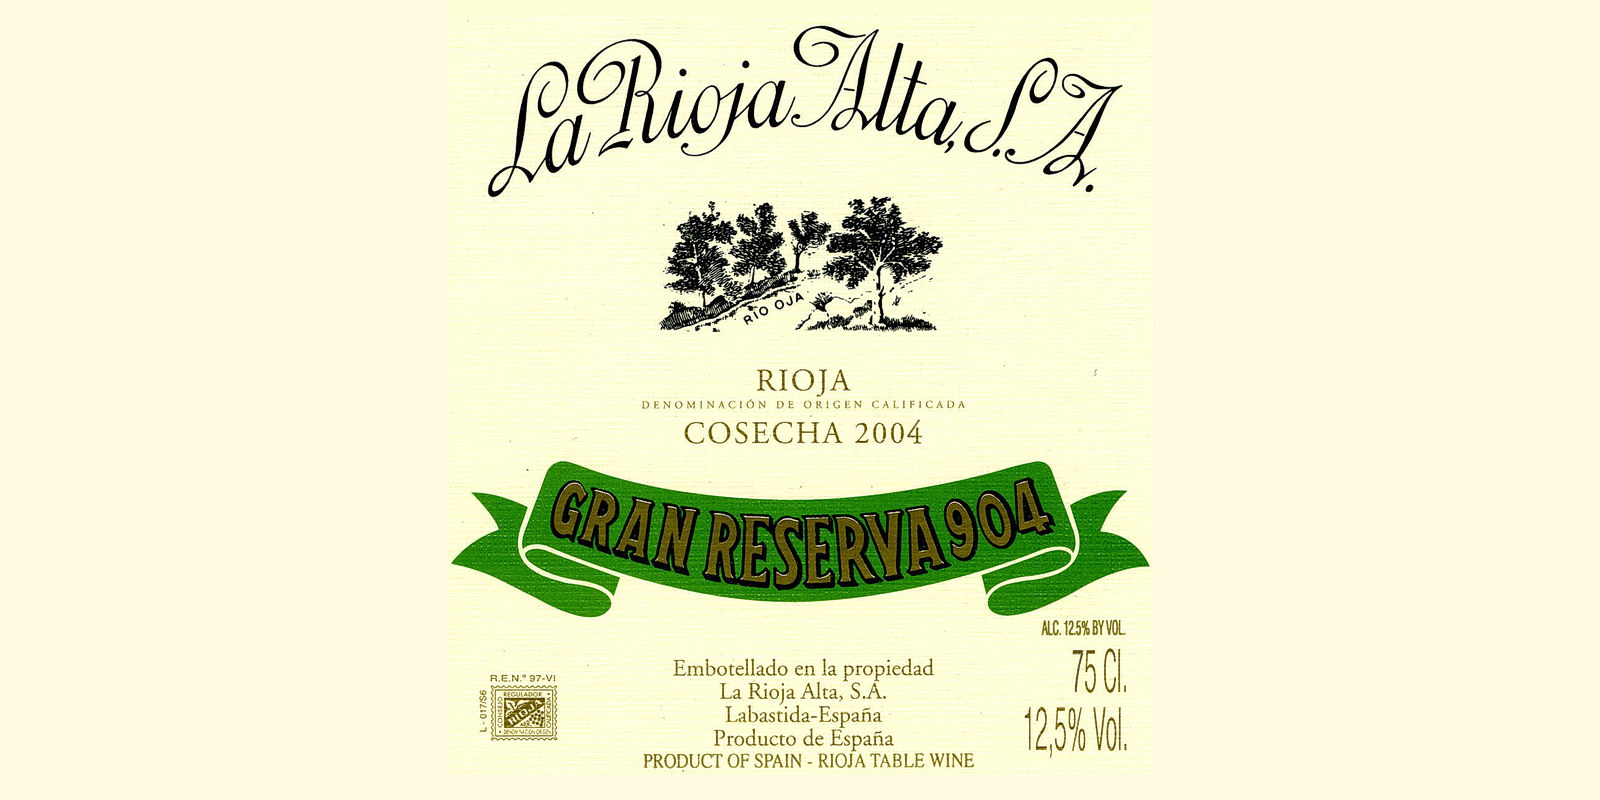 Этикетка вина из Риоха Альта